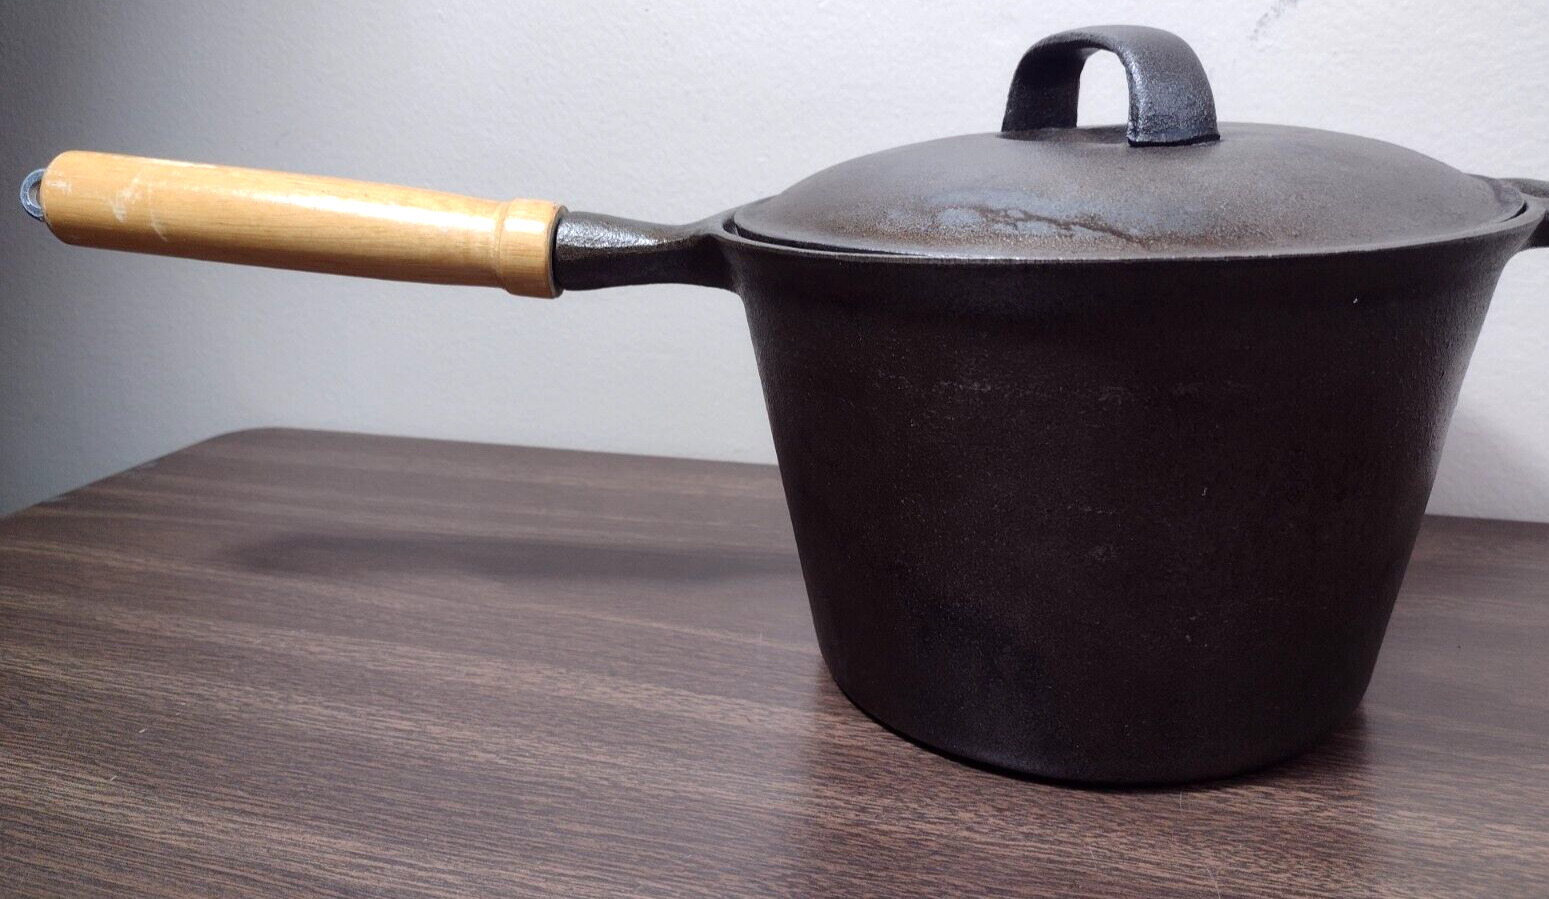 Vintage Cast Iron Stock Pot With Lid Wooden Handle 3 Quart Pot